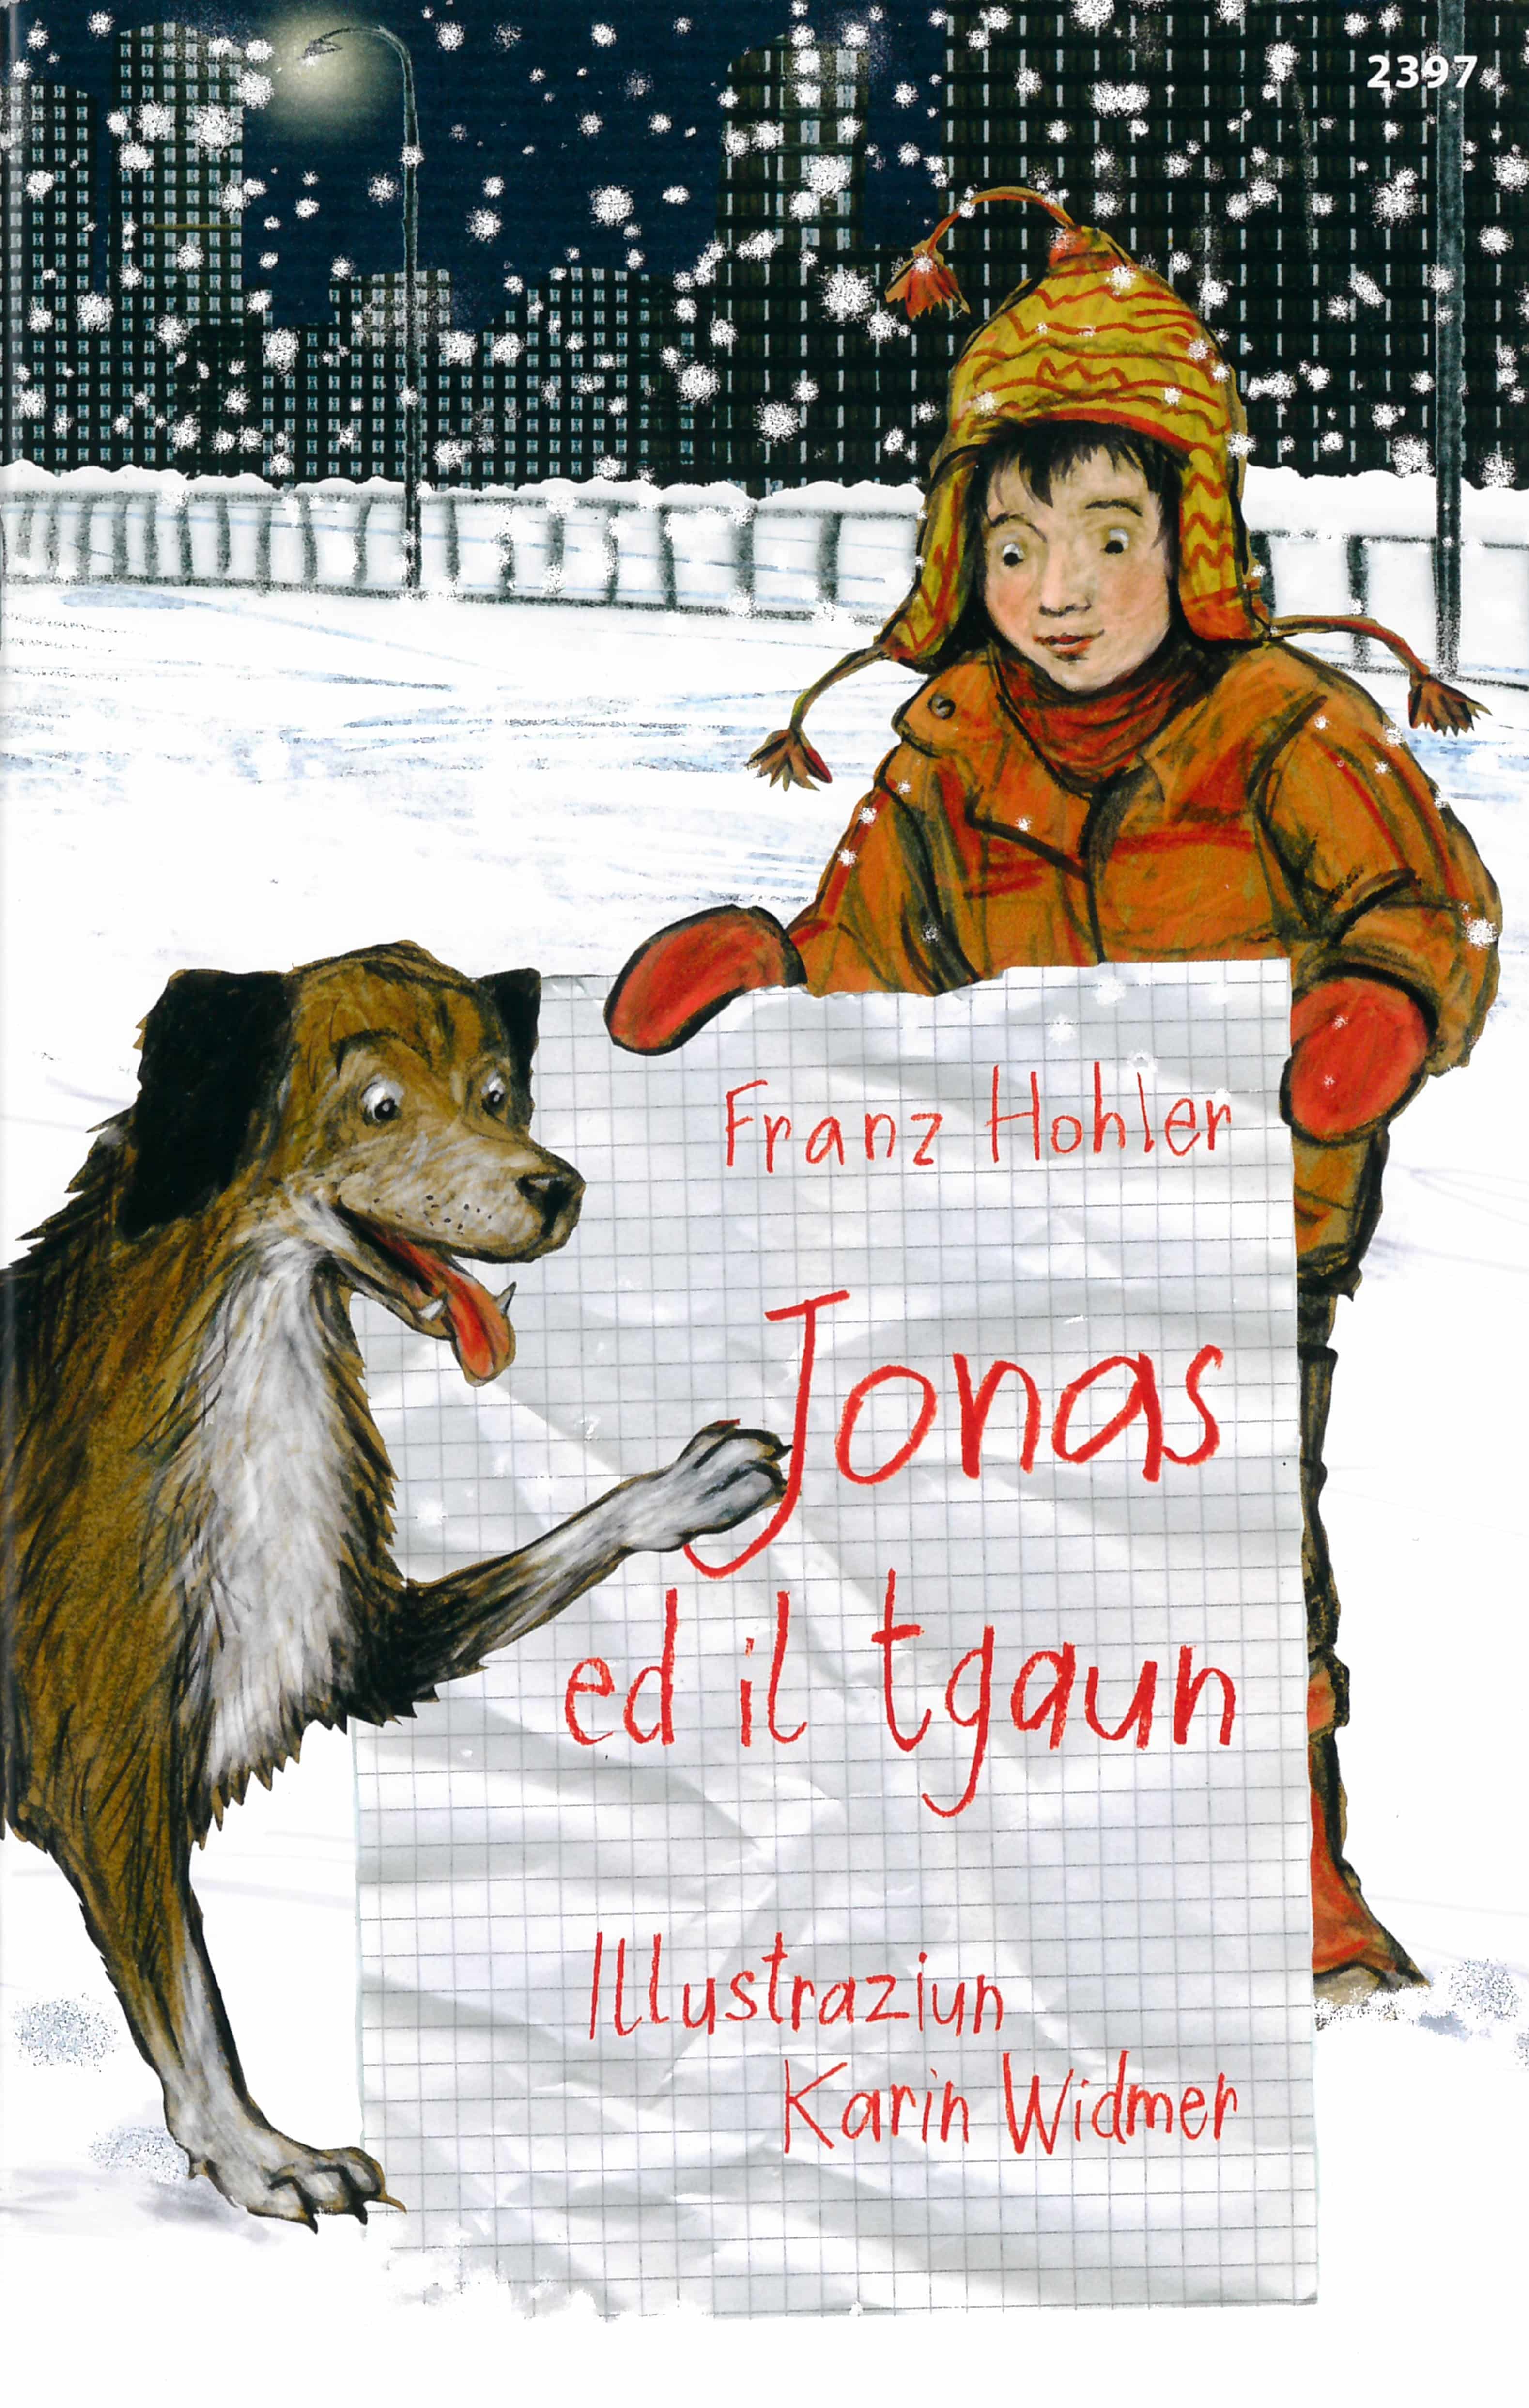 Jonas ed il tgaun, ein Kinderbuch von Franz Hohler, Illustration von Karin Widmer, SJW Verlag, Wintergeschichte